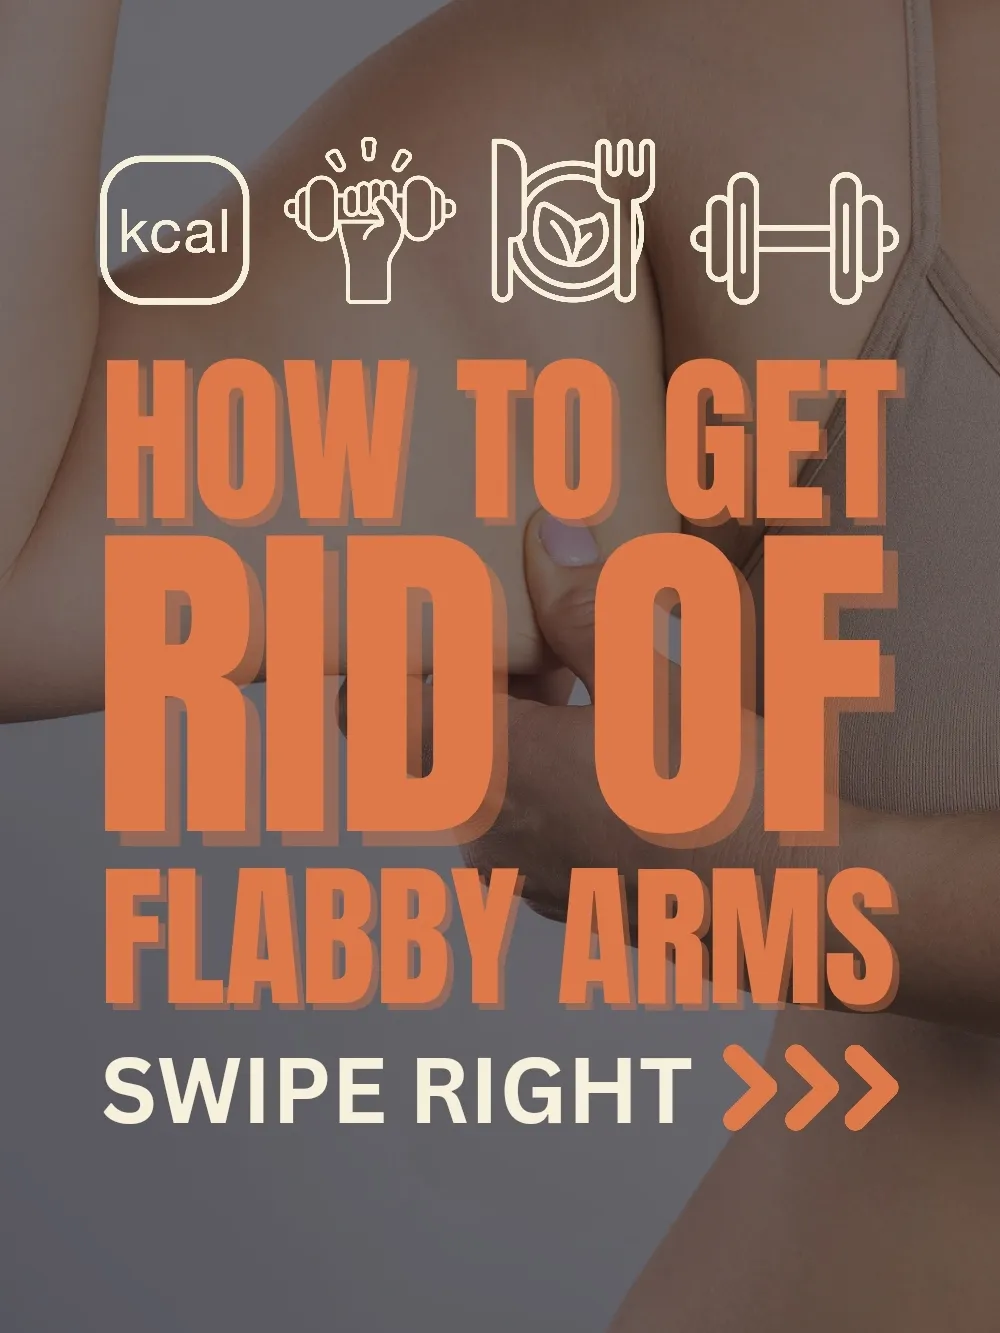 Flabby arm workouts - Lemon8 Search